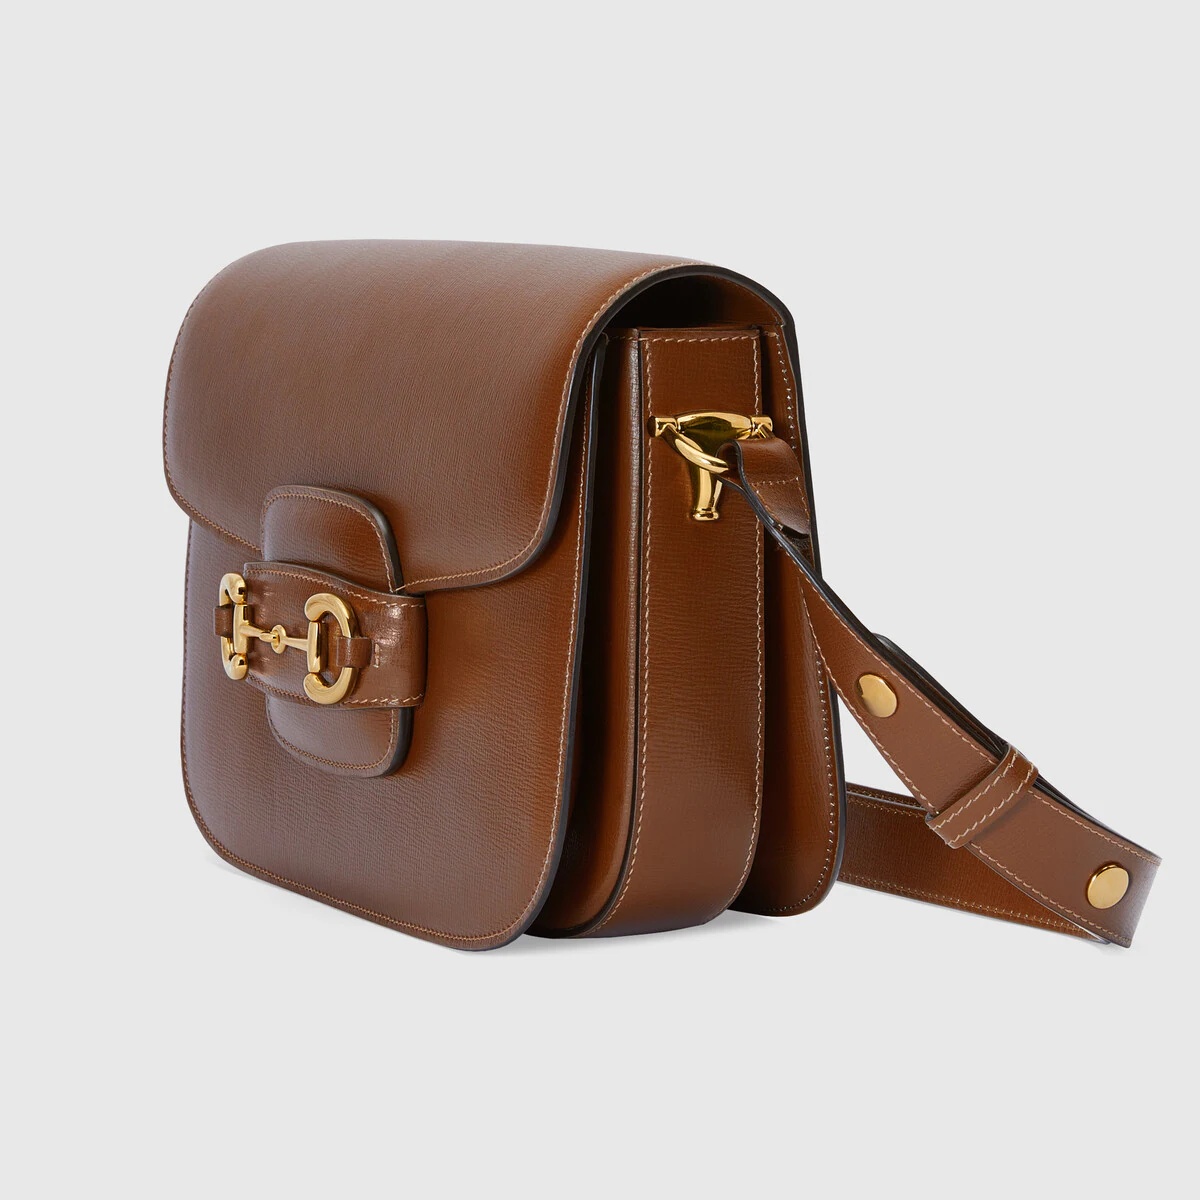 Gucci Horsebit 1955 shoulder bag - 1